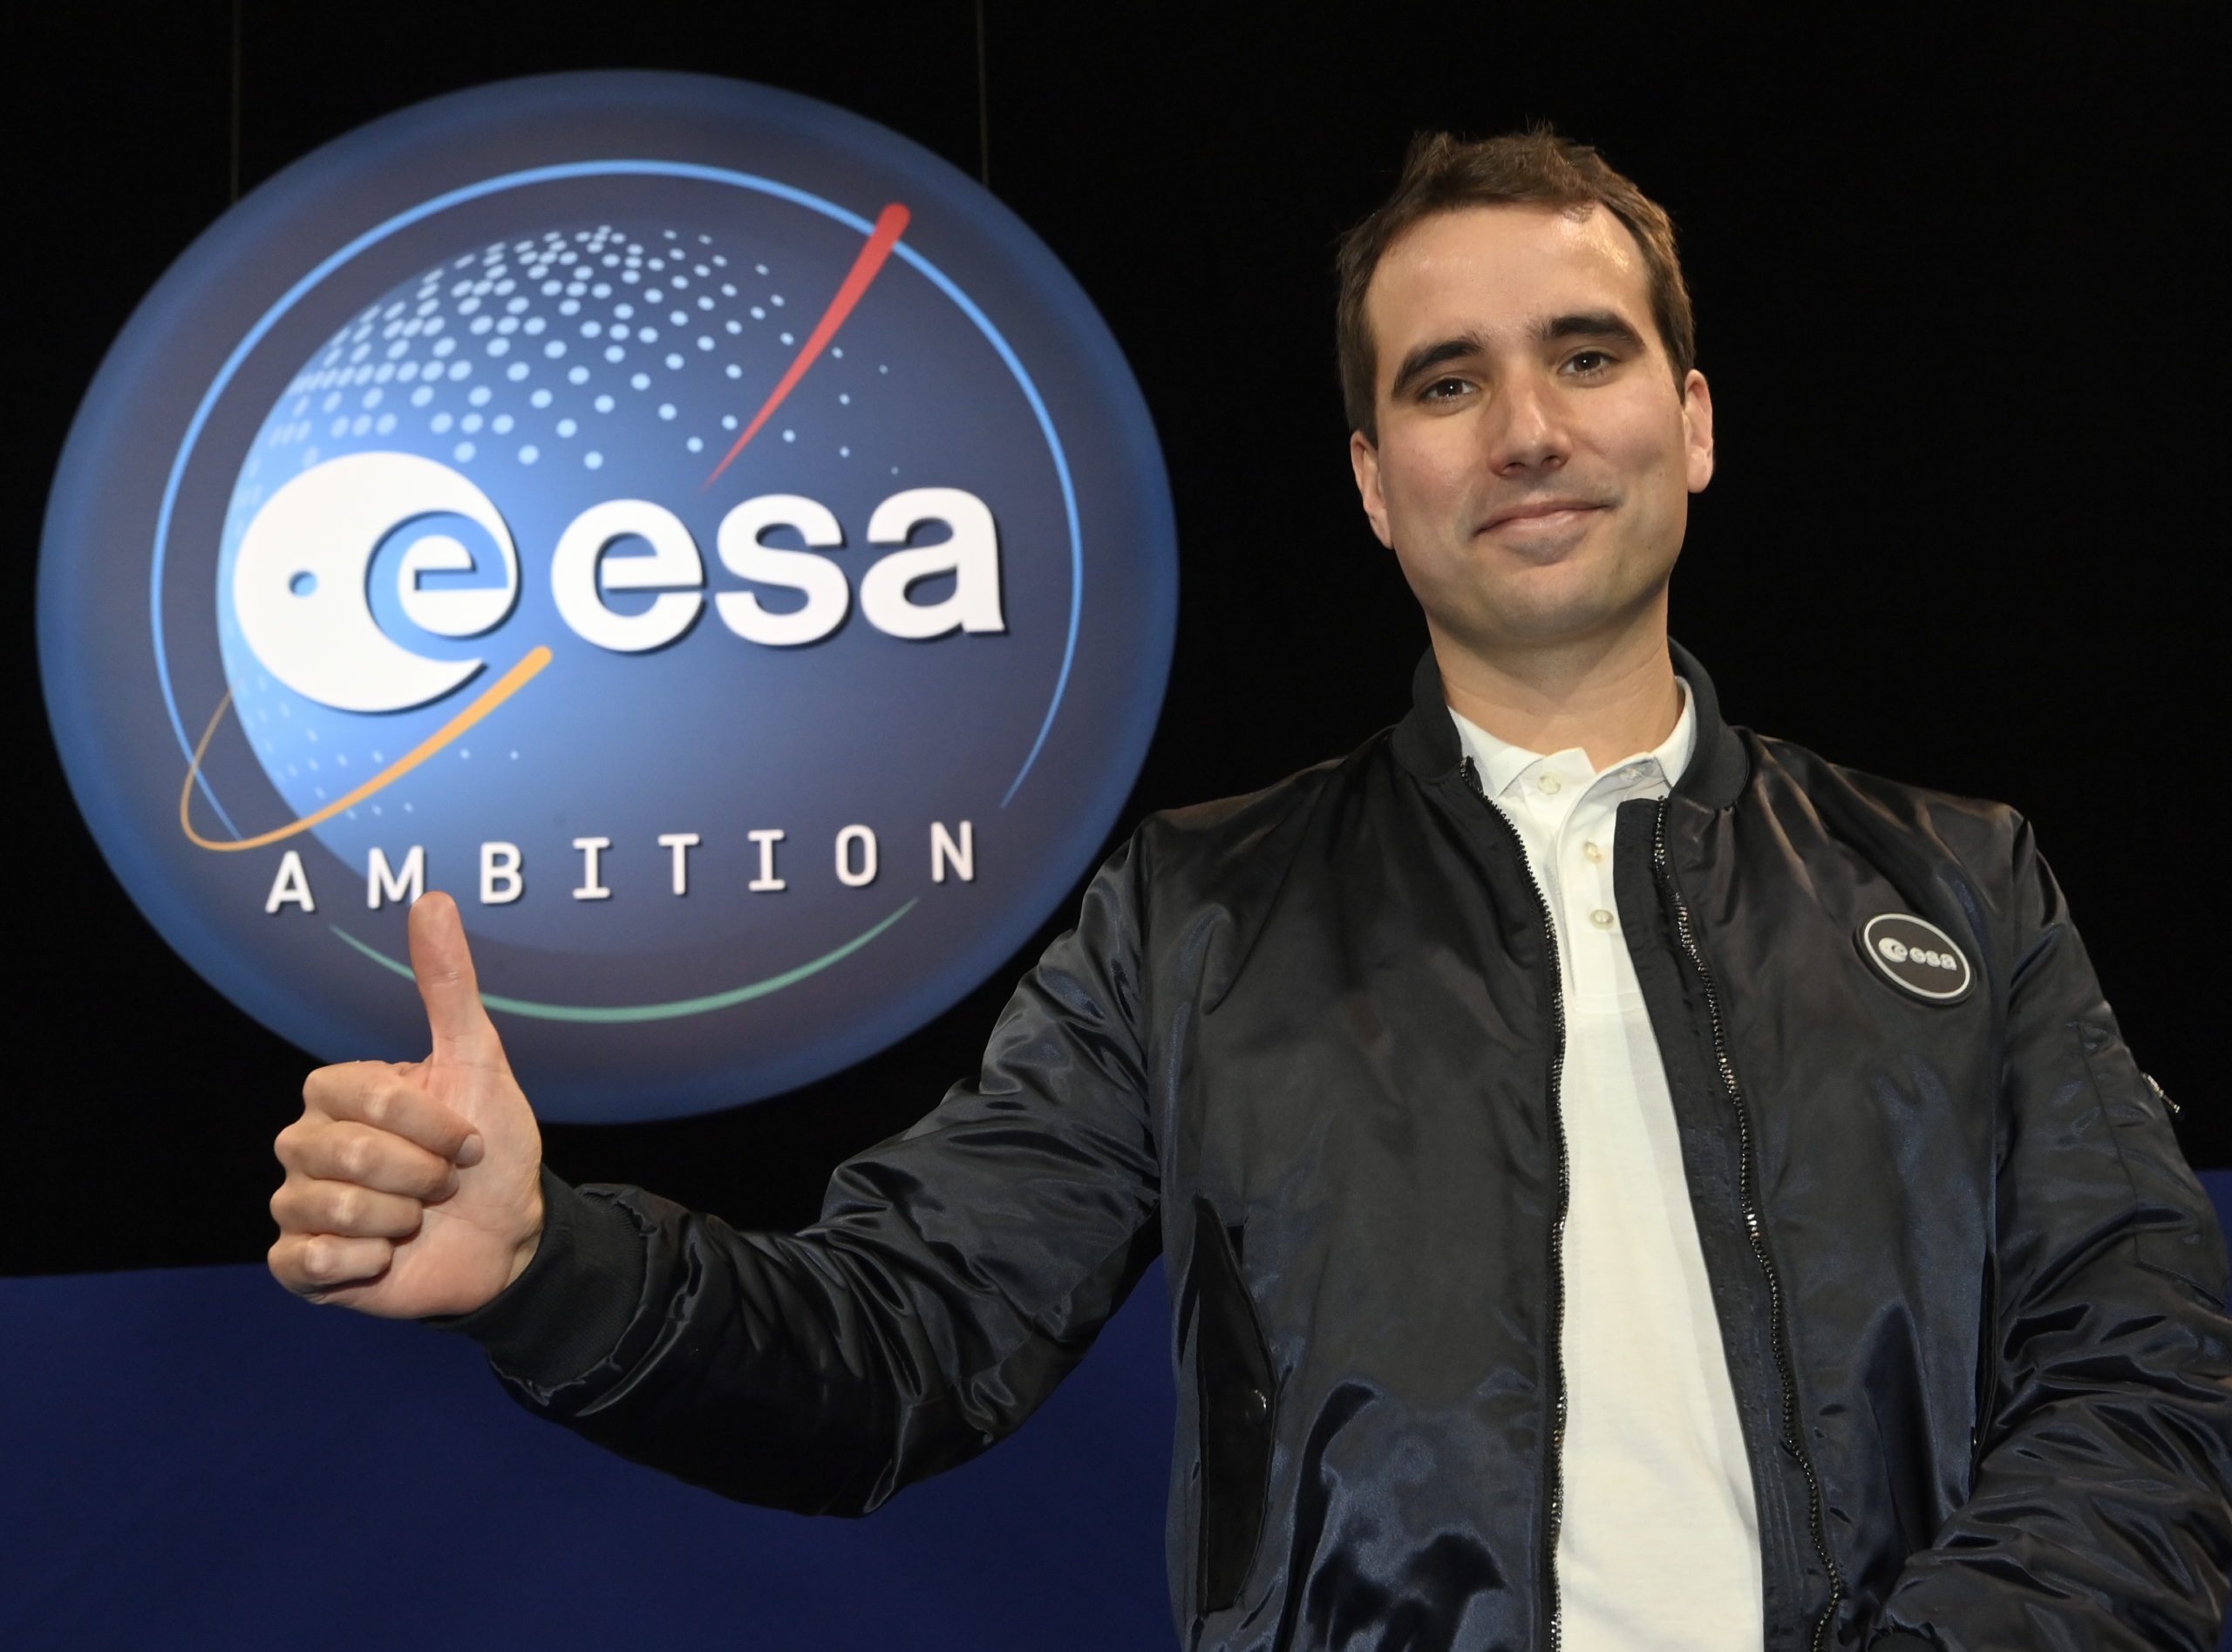 Le Belge Raphaël Liégeois a été sélectionné pour partir dans l’espace